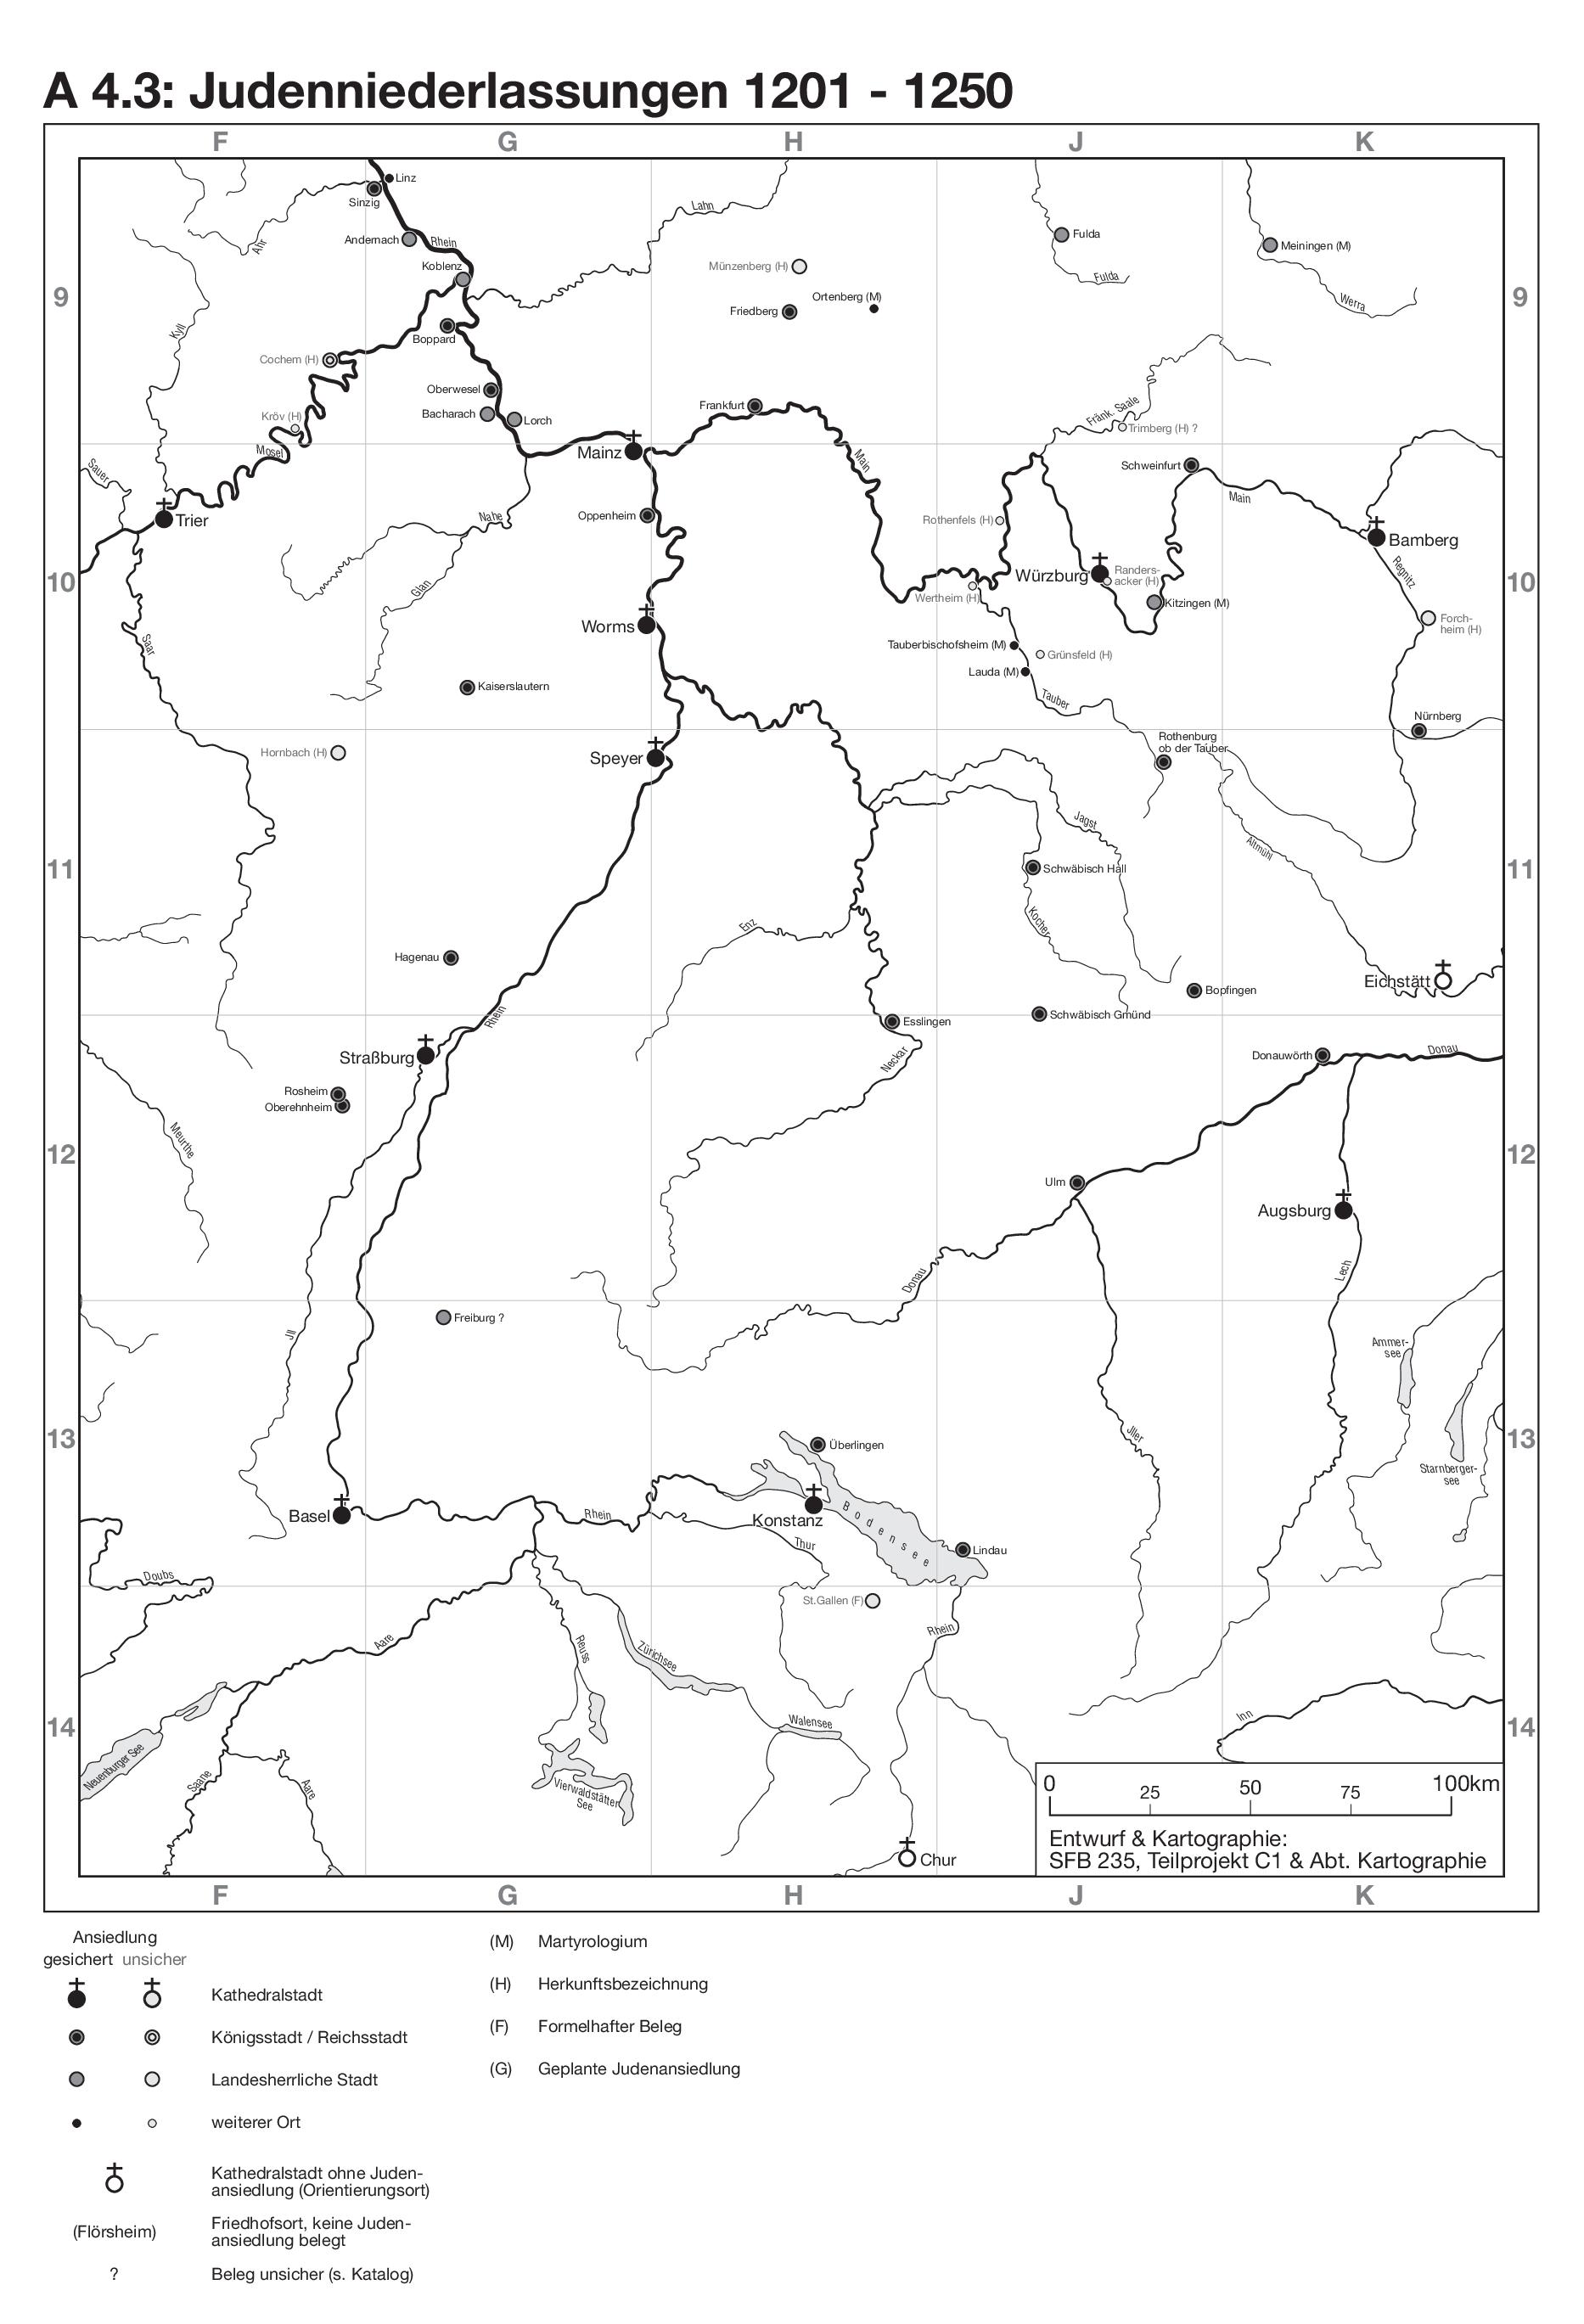 Karte A 4.3 Judenniederlassungen von 1201 bis 1250